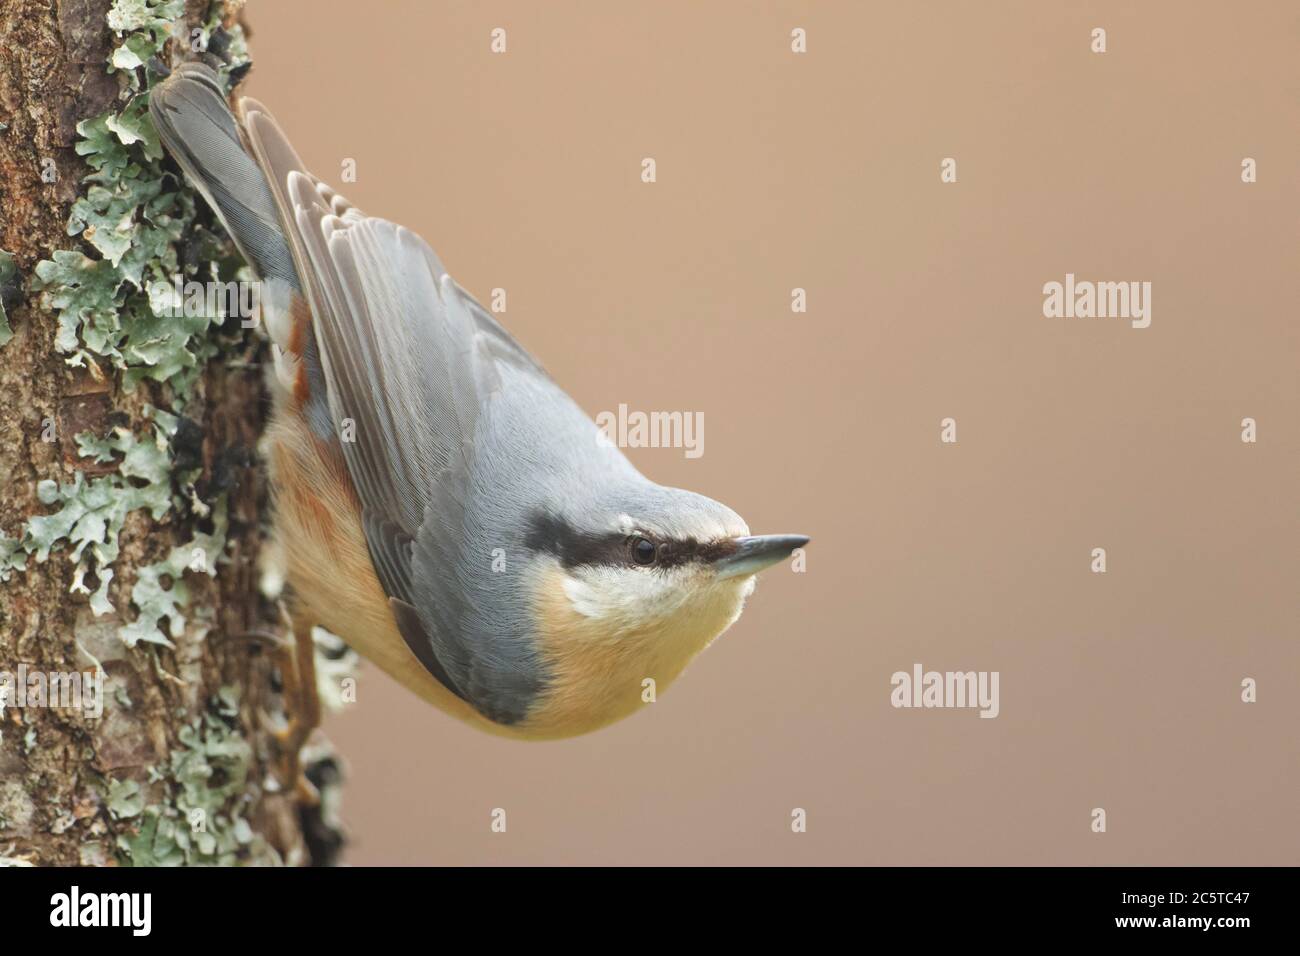 Clamenes, Leon/Espagne; 15 février 2020. Le nuthatch eurasien ou nuthatch de bois (Sitta europaea) est un petit oiseau de passereau trouvé dans tout le Paléarctique Banque D'Images